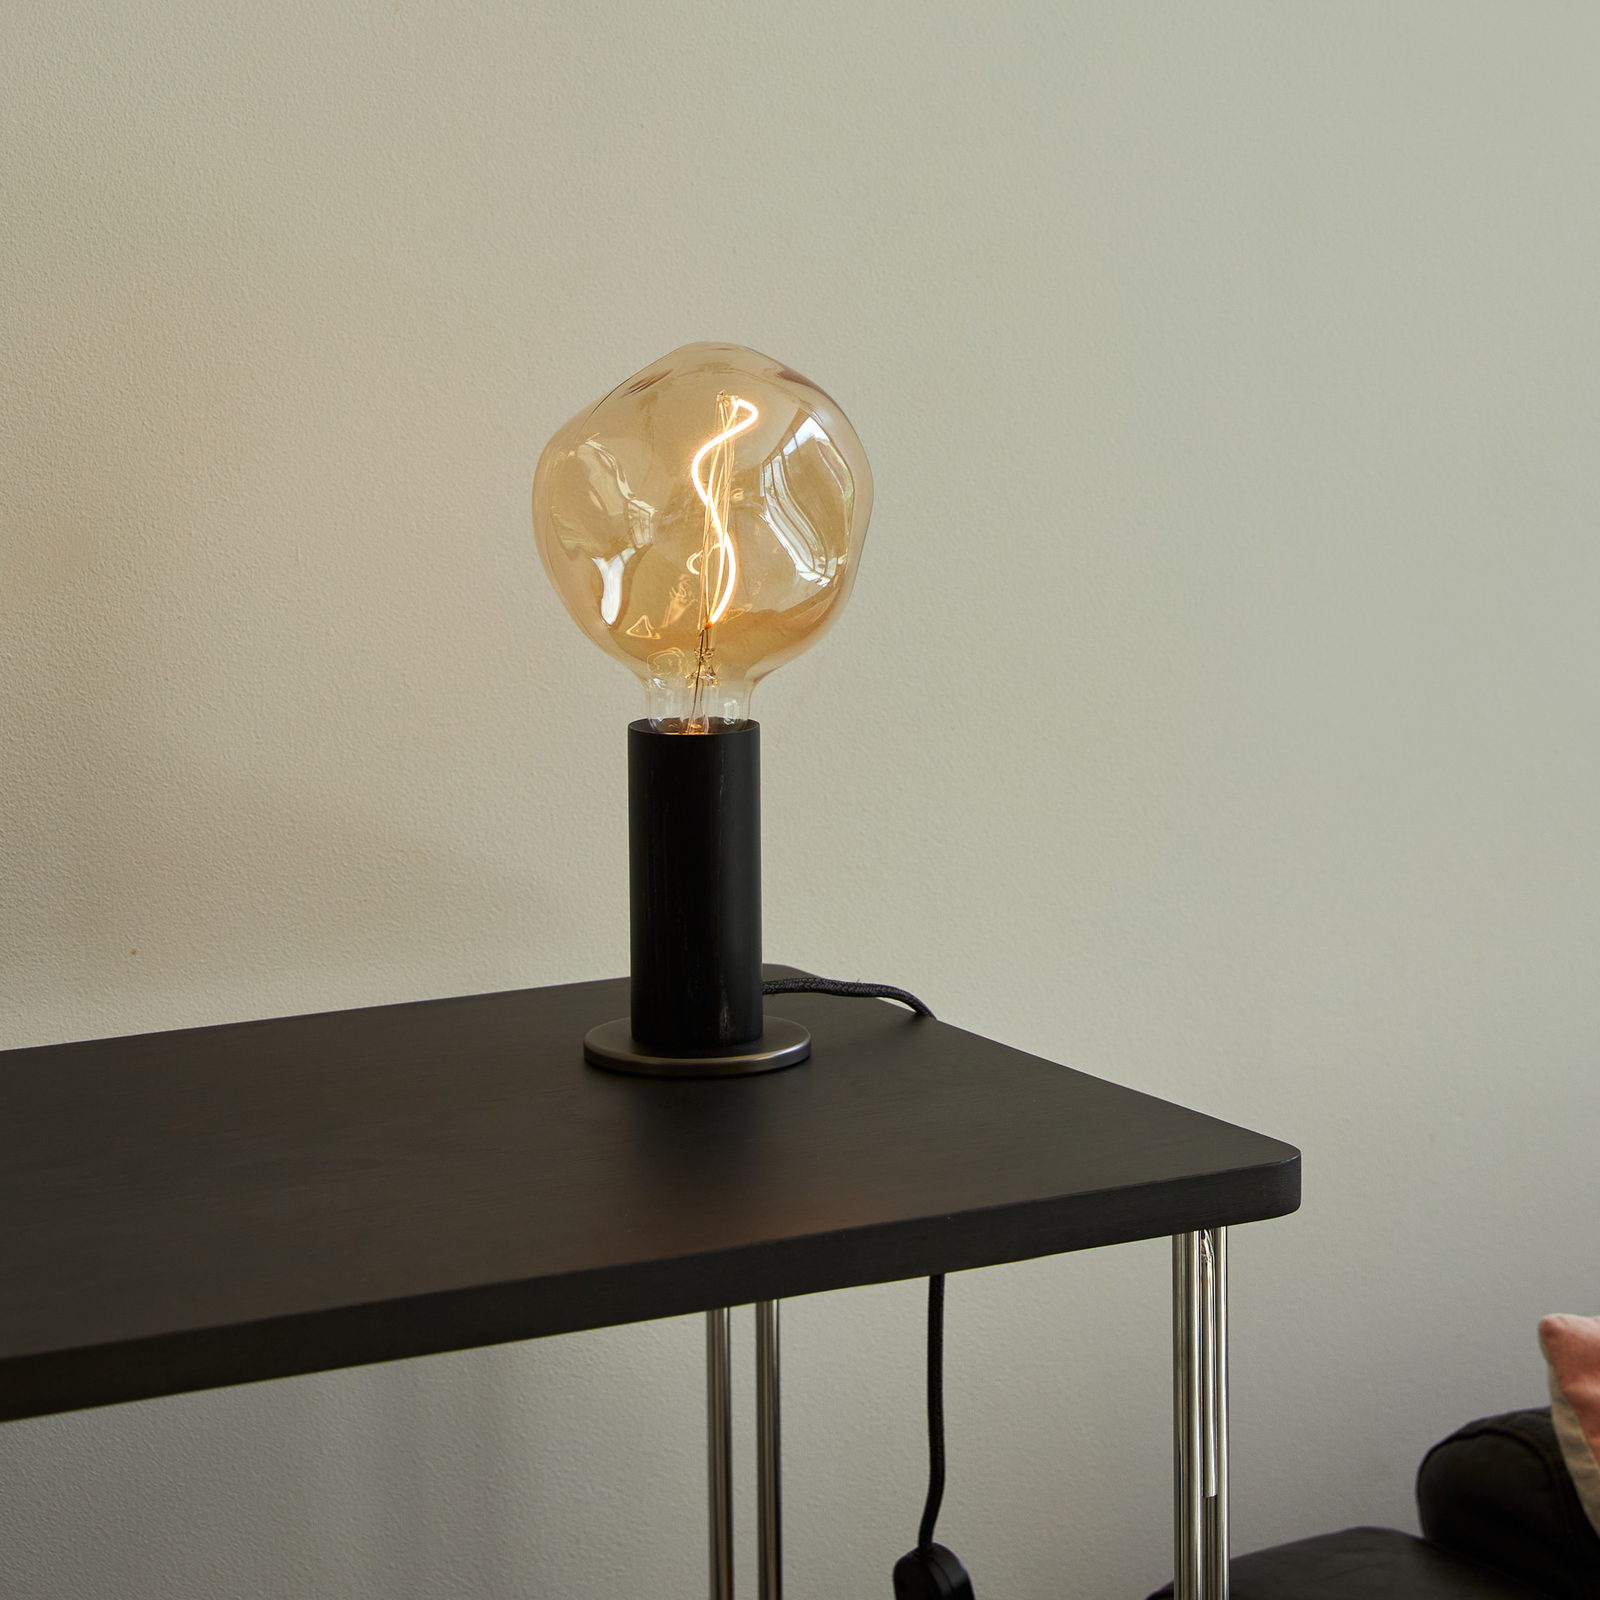 Lampa stołowa Tala Knuckle, przezroczysta żarówka globe kulista, czarny dąb